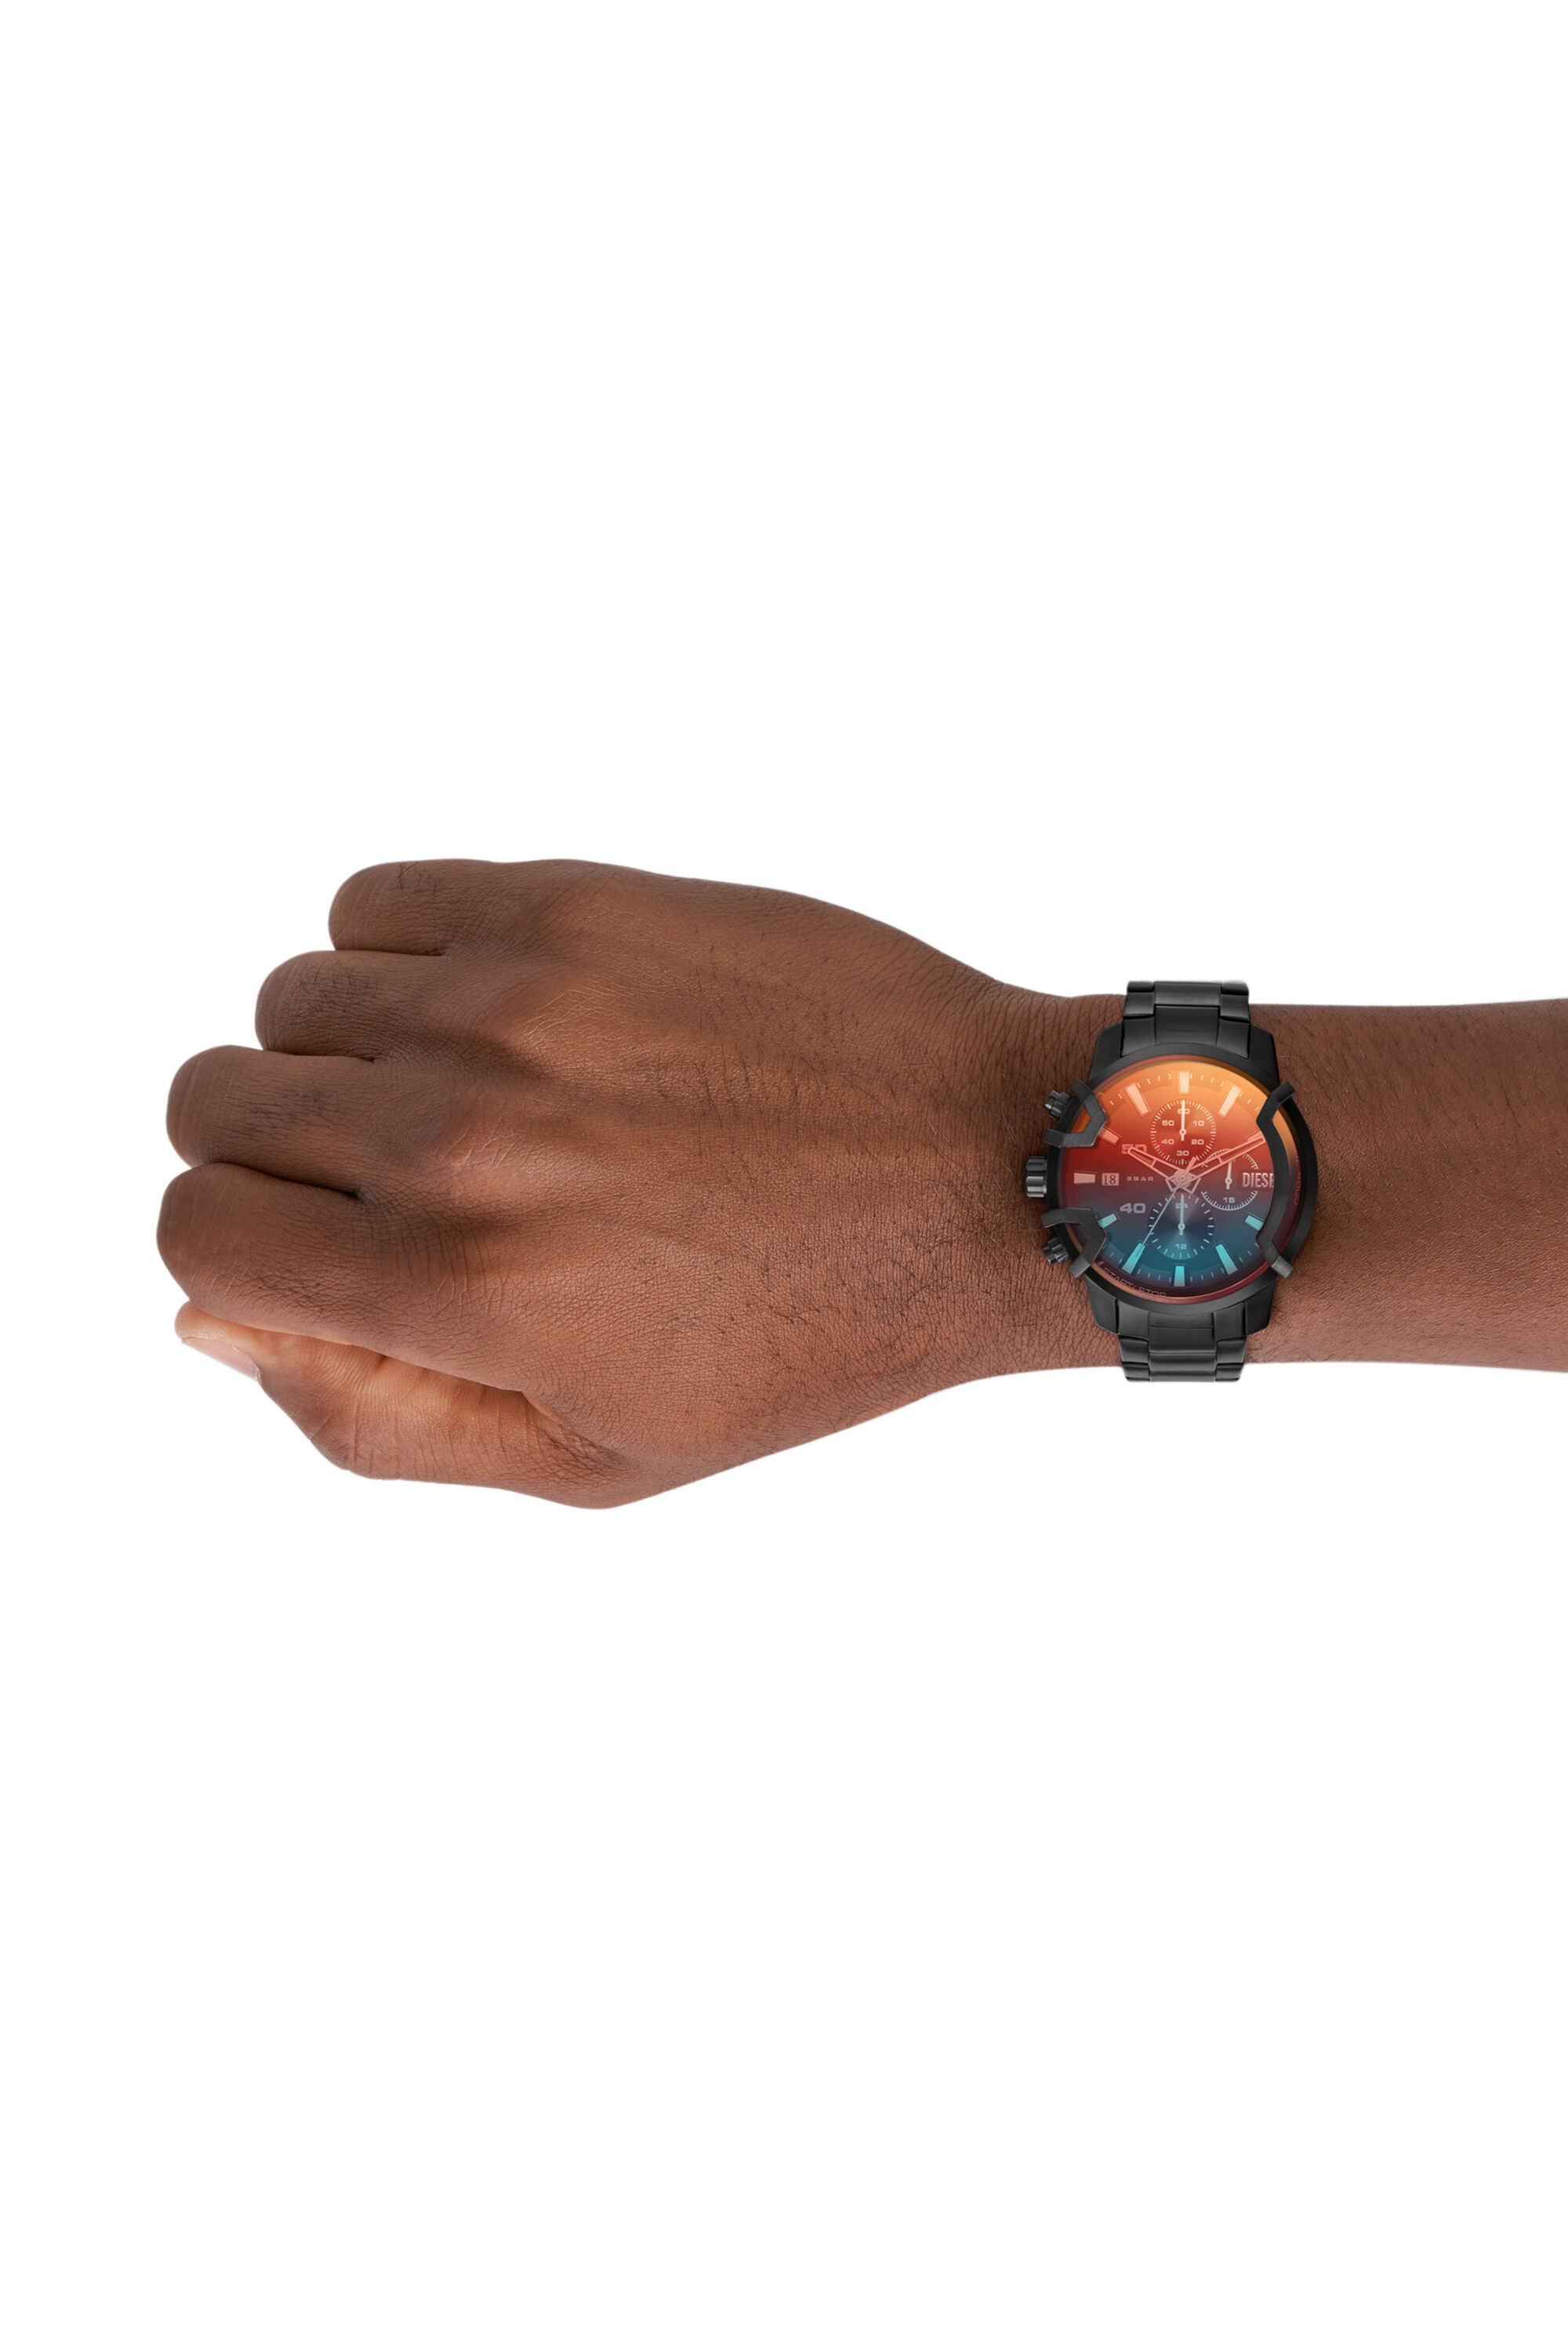 ユニセックス 腕時計 TIMEFRAME DZ4605-